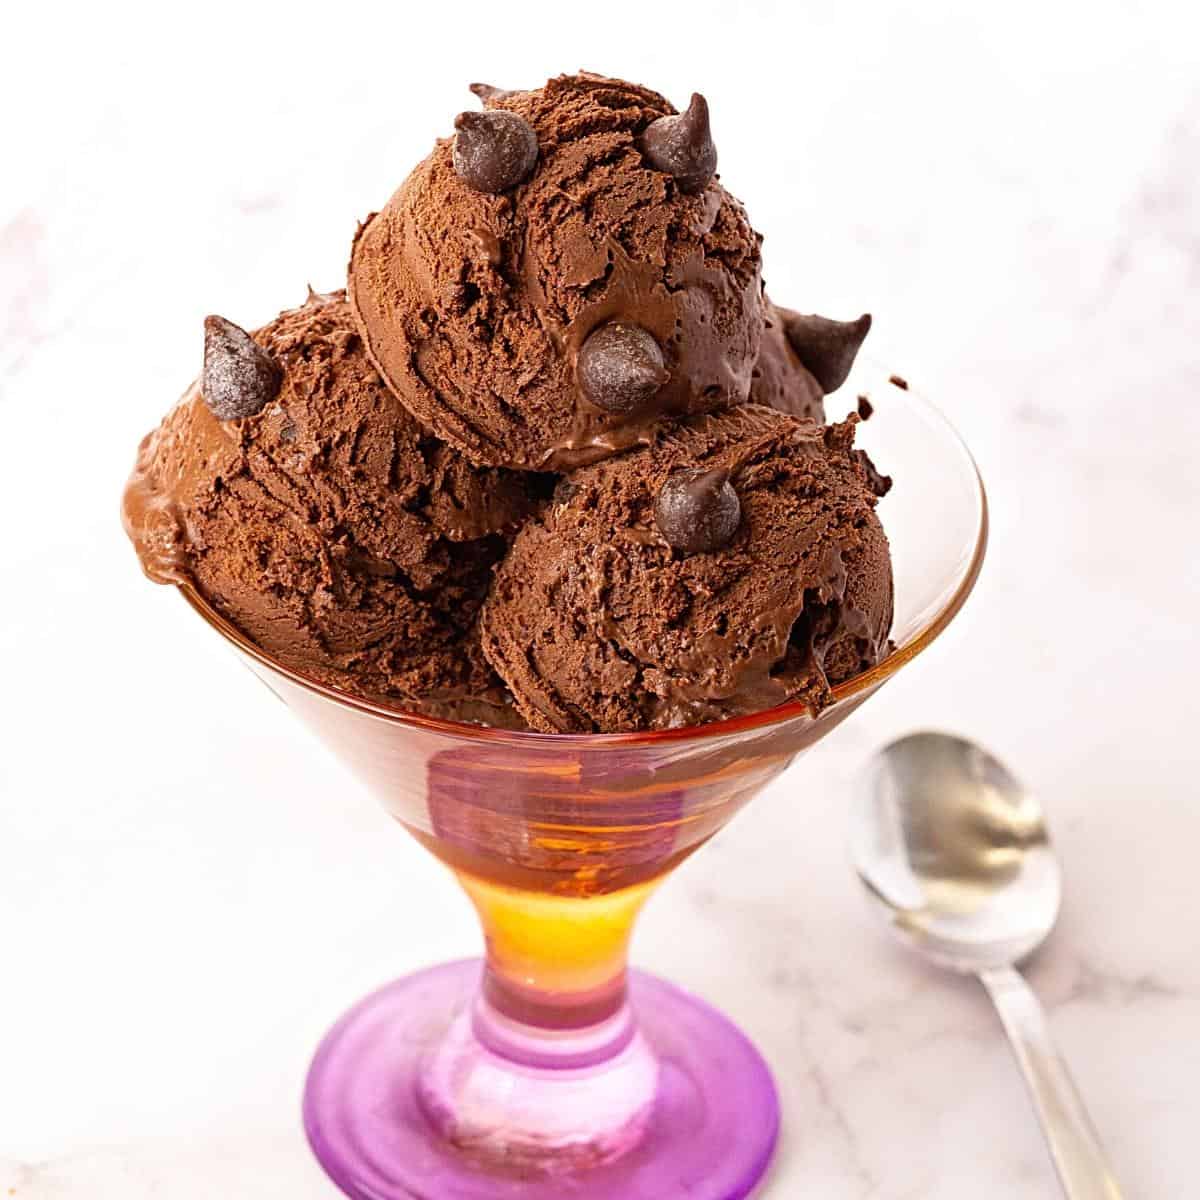 https://staging.veenaazmanov.com/wp-content/uploads/2017/07/Homemade-Chocolate-Ice-Cream-3.jpg